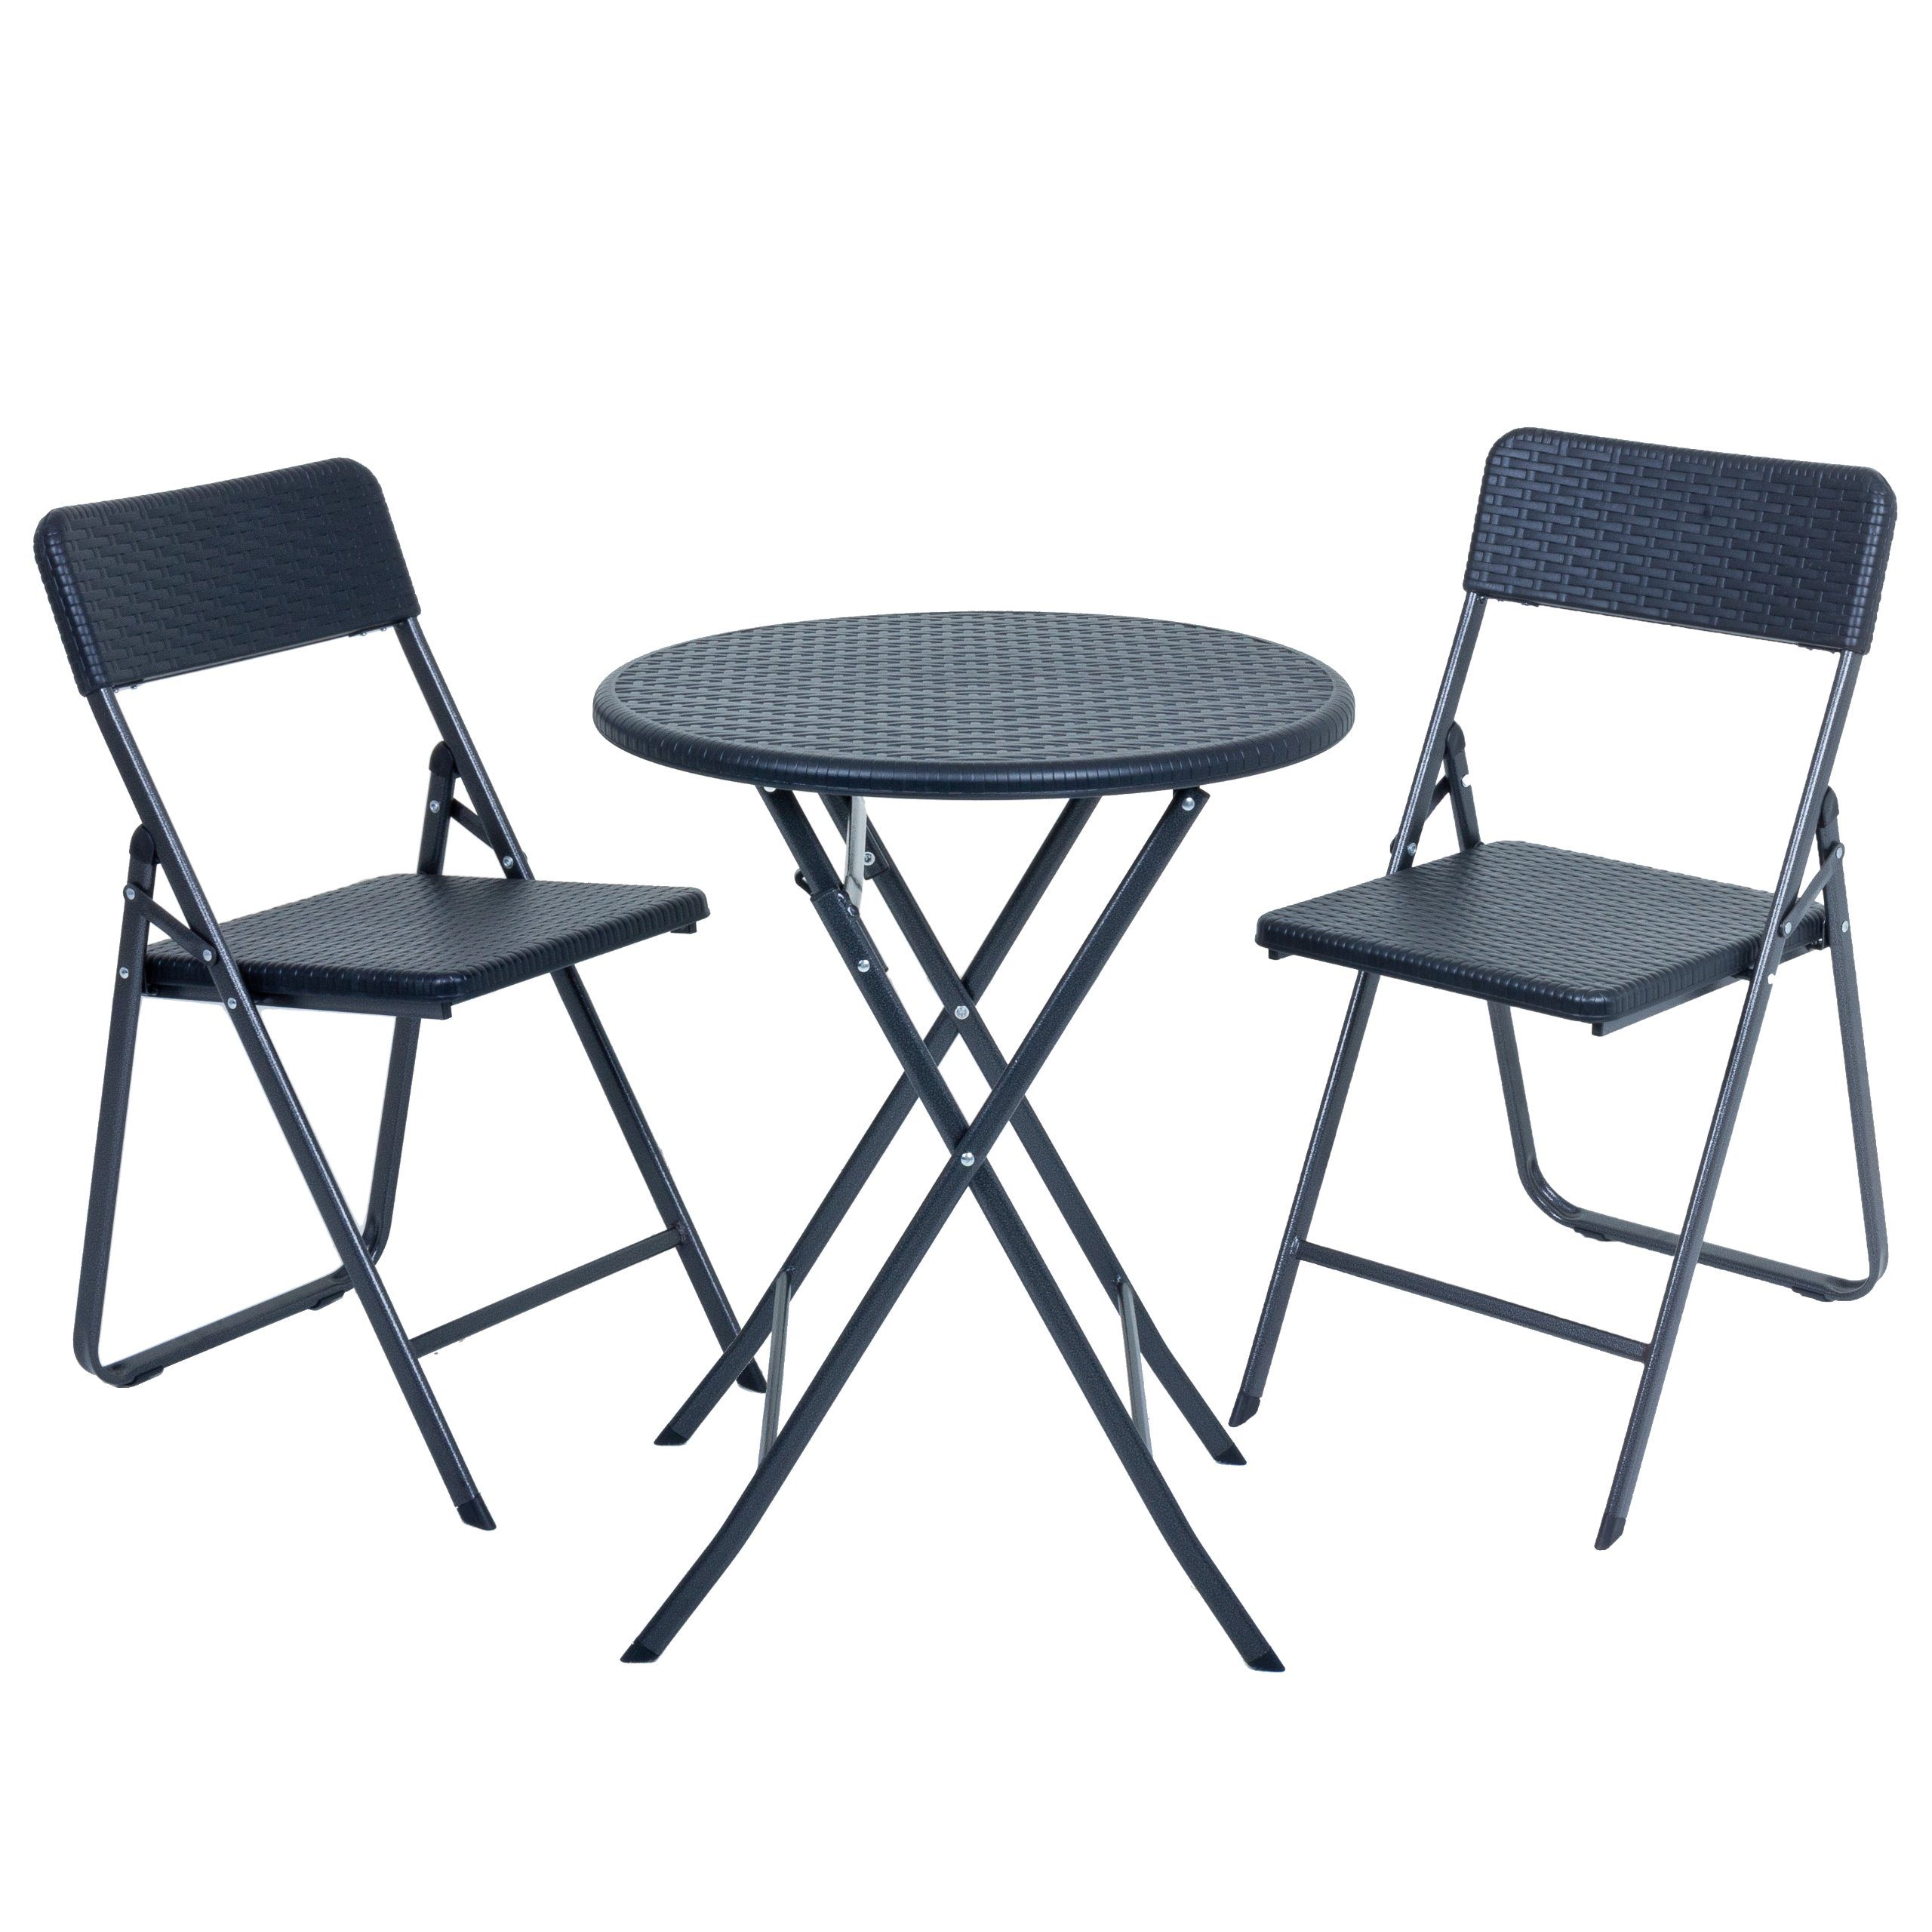 Raburg Gartenmöbelset »KARINA Premium - in SCHWARZ, 1 RUNDER Tisch + 2  Stühle, stabile & praktische, 3-teilige Sitzgruppe in zeitloser  Rattan-Optik, klappbares Balkon-Set« online kaufen | OTTO